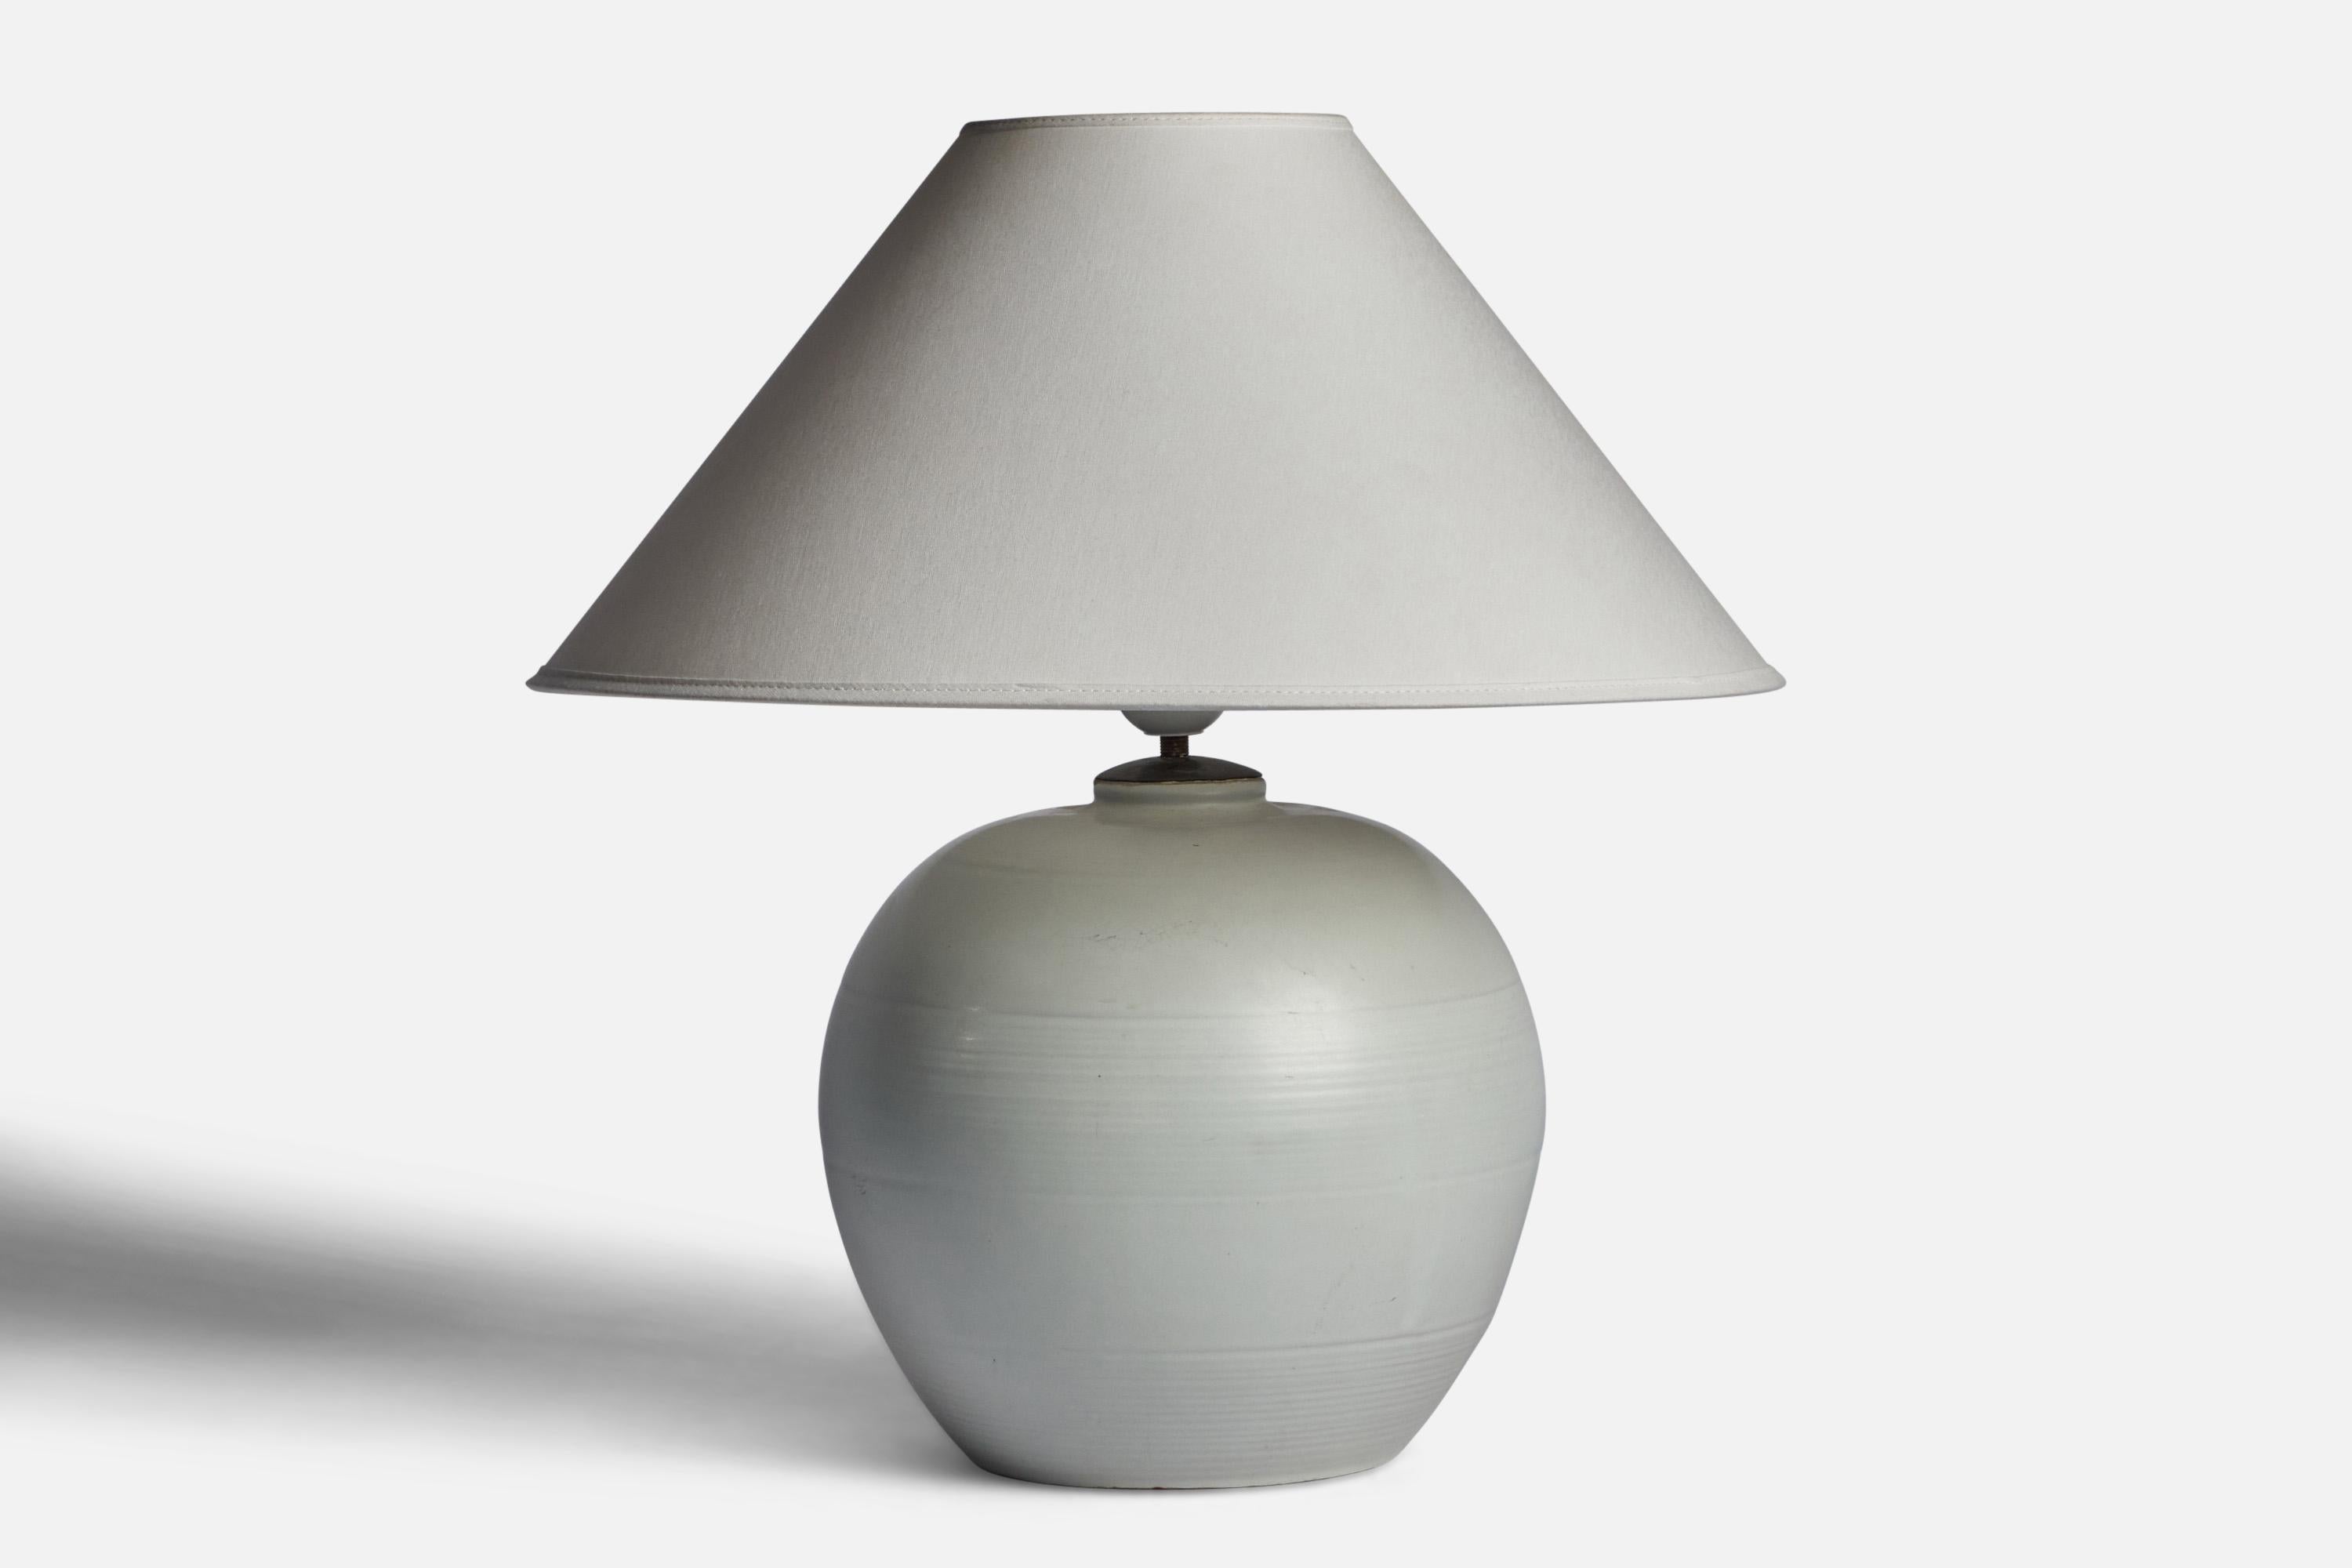 Lampe de table blanc cassé conçue par Anna-Lisa Thomson et produite par Whiting/One, Suède, années 1930.

Estampille 